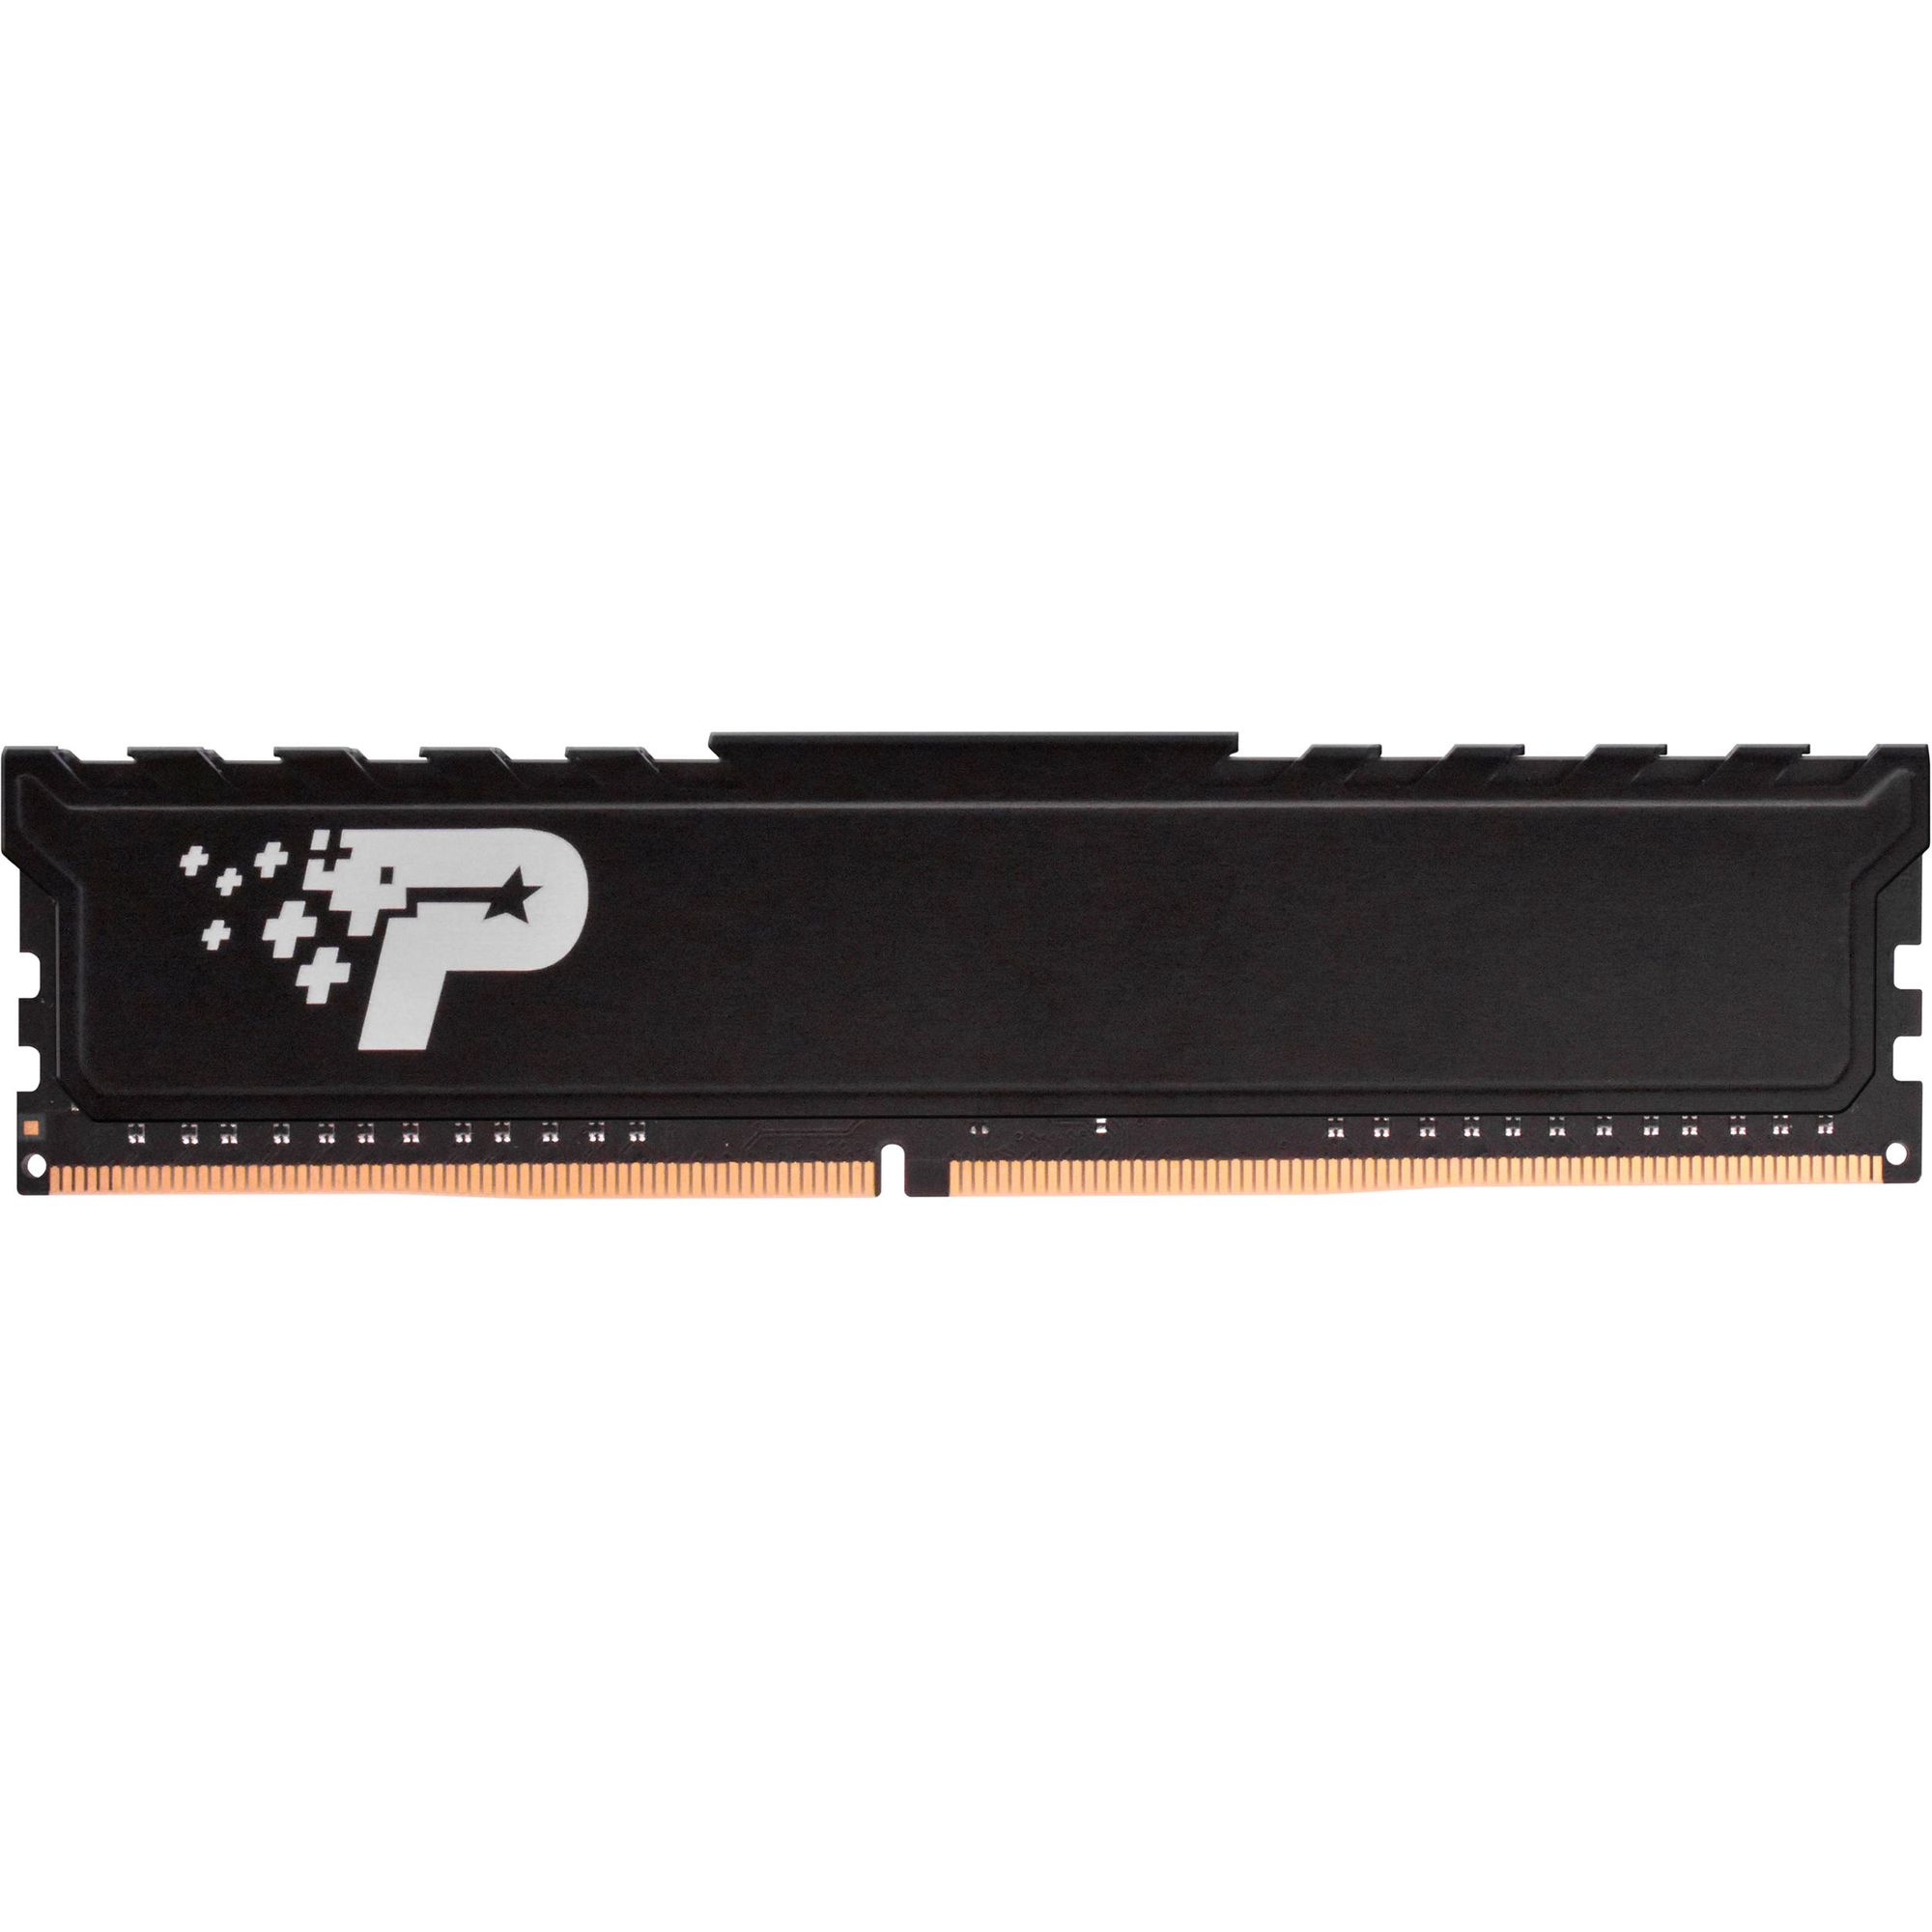 Память оперативная DDR4 Patriot Memory SL Premium 16Gb 2666MHz (PSP416G26662H1) память оперативная ddr4 patriot memory 16gb 2666mhz psd416g266681s